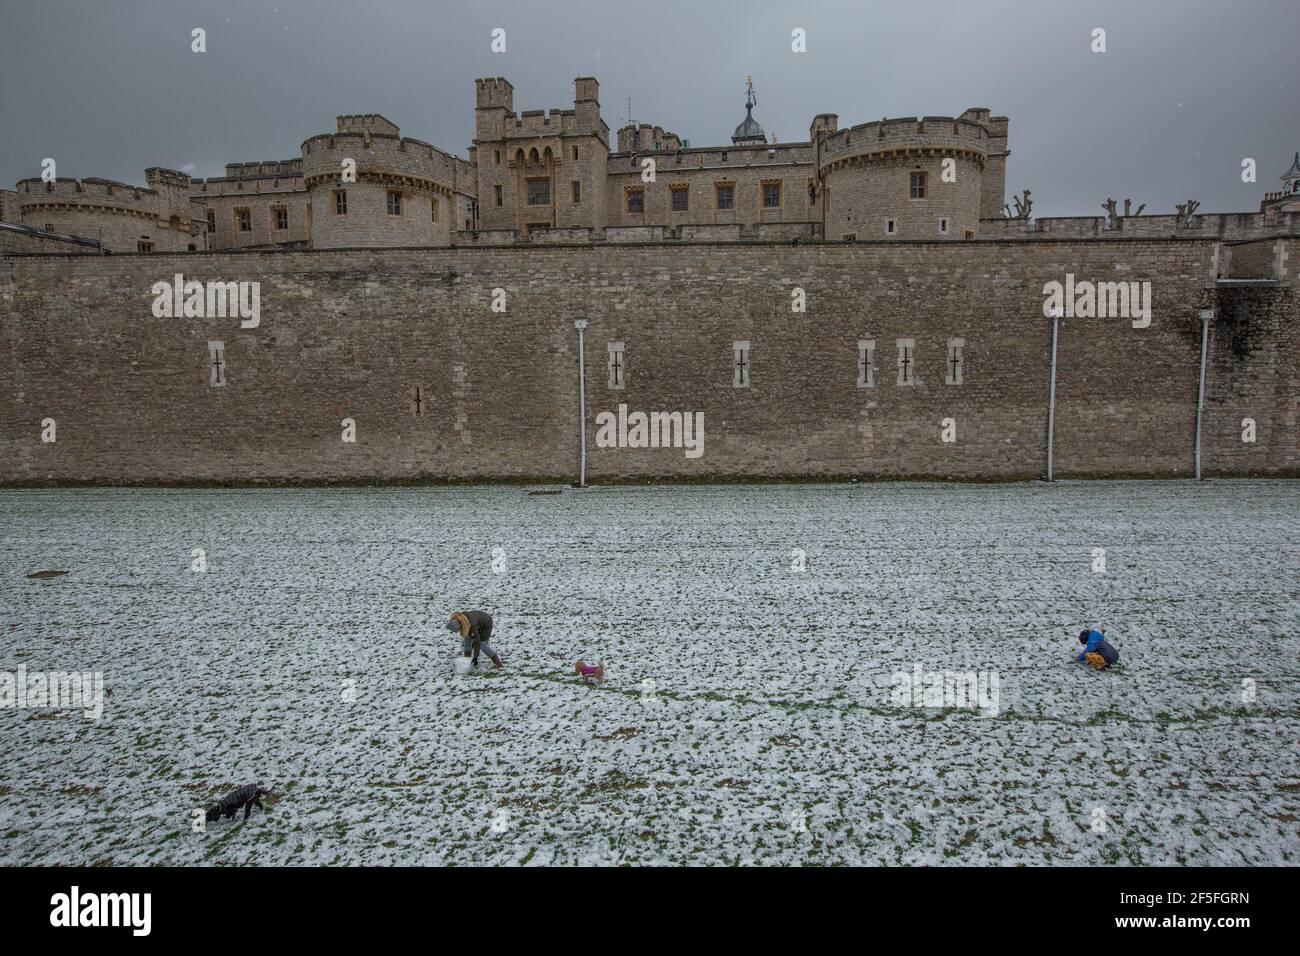 Der Tower of London hatte einen Teppich im Schnee, als während des Sturms Darcy, London, England, Großbritannien, die eisigen Temperaturen London trafen Stockfoto